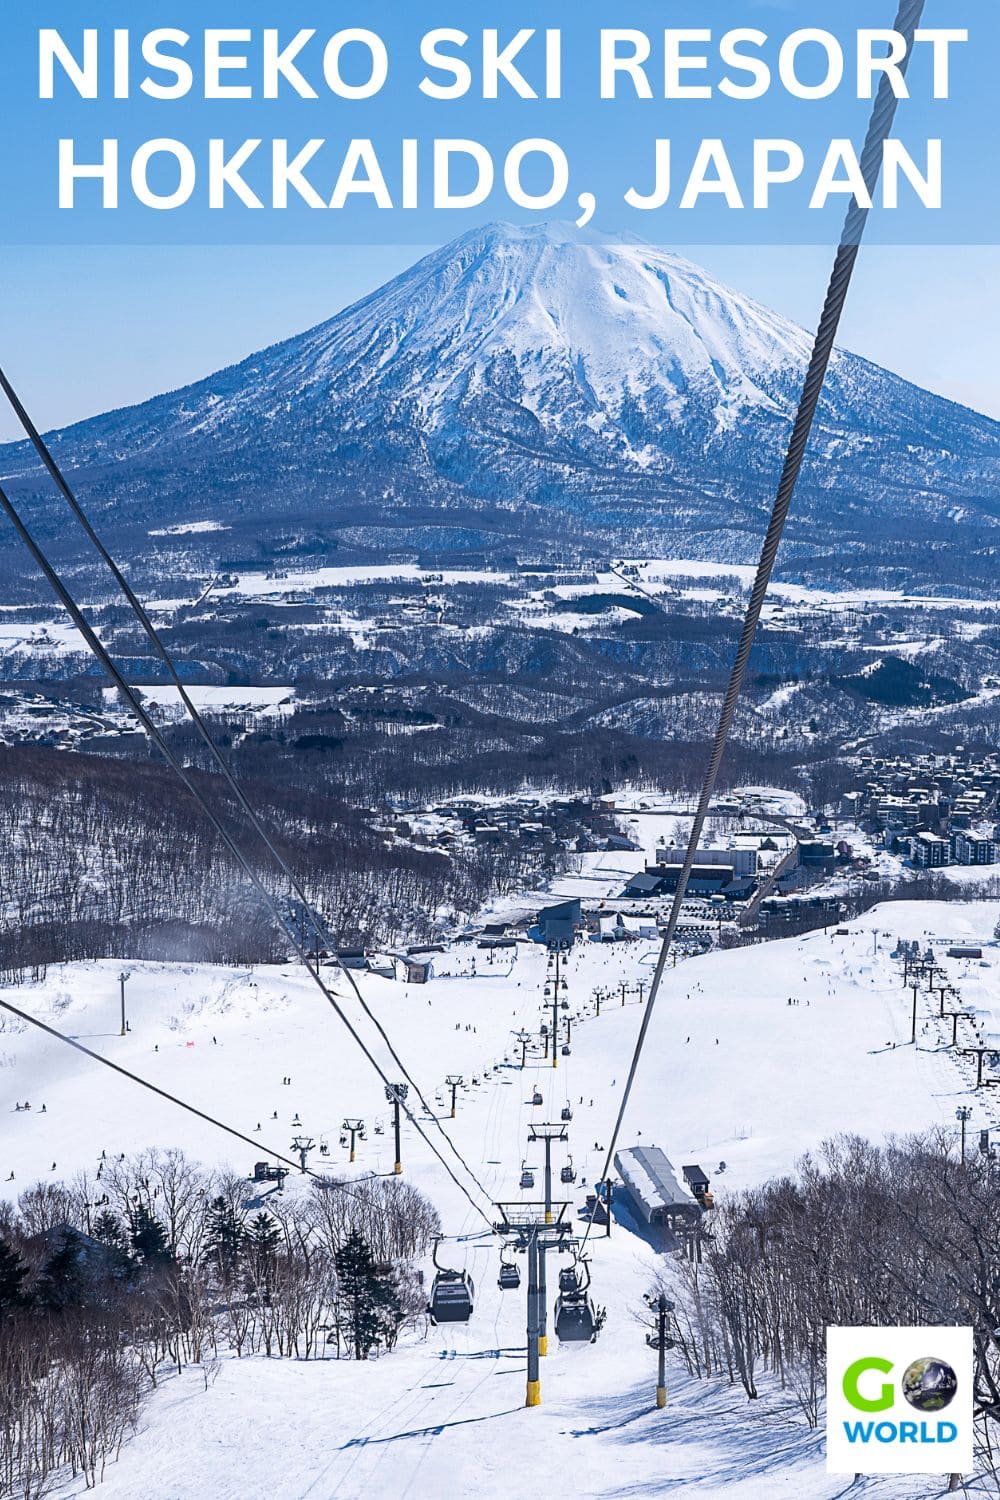 Cari tahu mengapa pemain ski Australia dan internasional lainnya pergi ke Resor Ski Niseko di Hokkaido, Jepang untuk menikmati bubuk epik.  #skiingJapan #hokkaidojapan